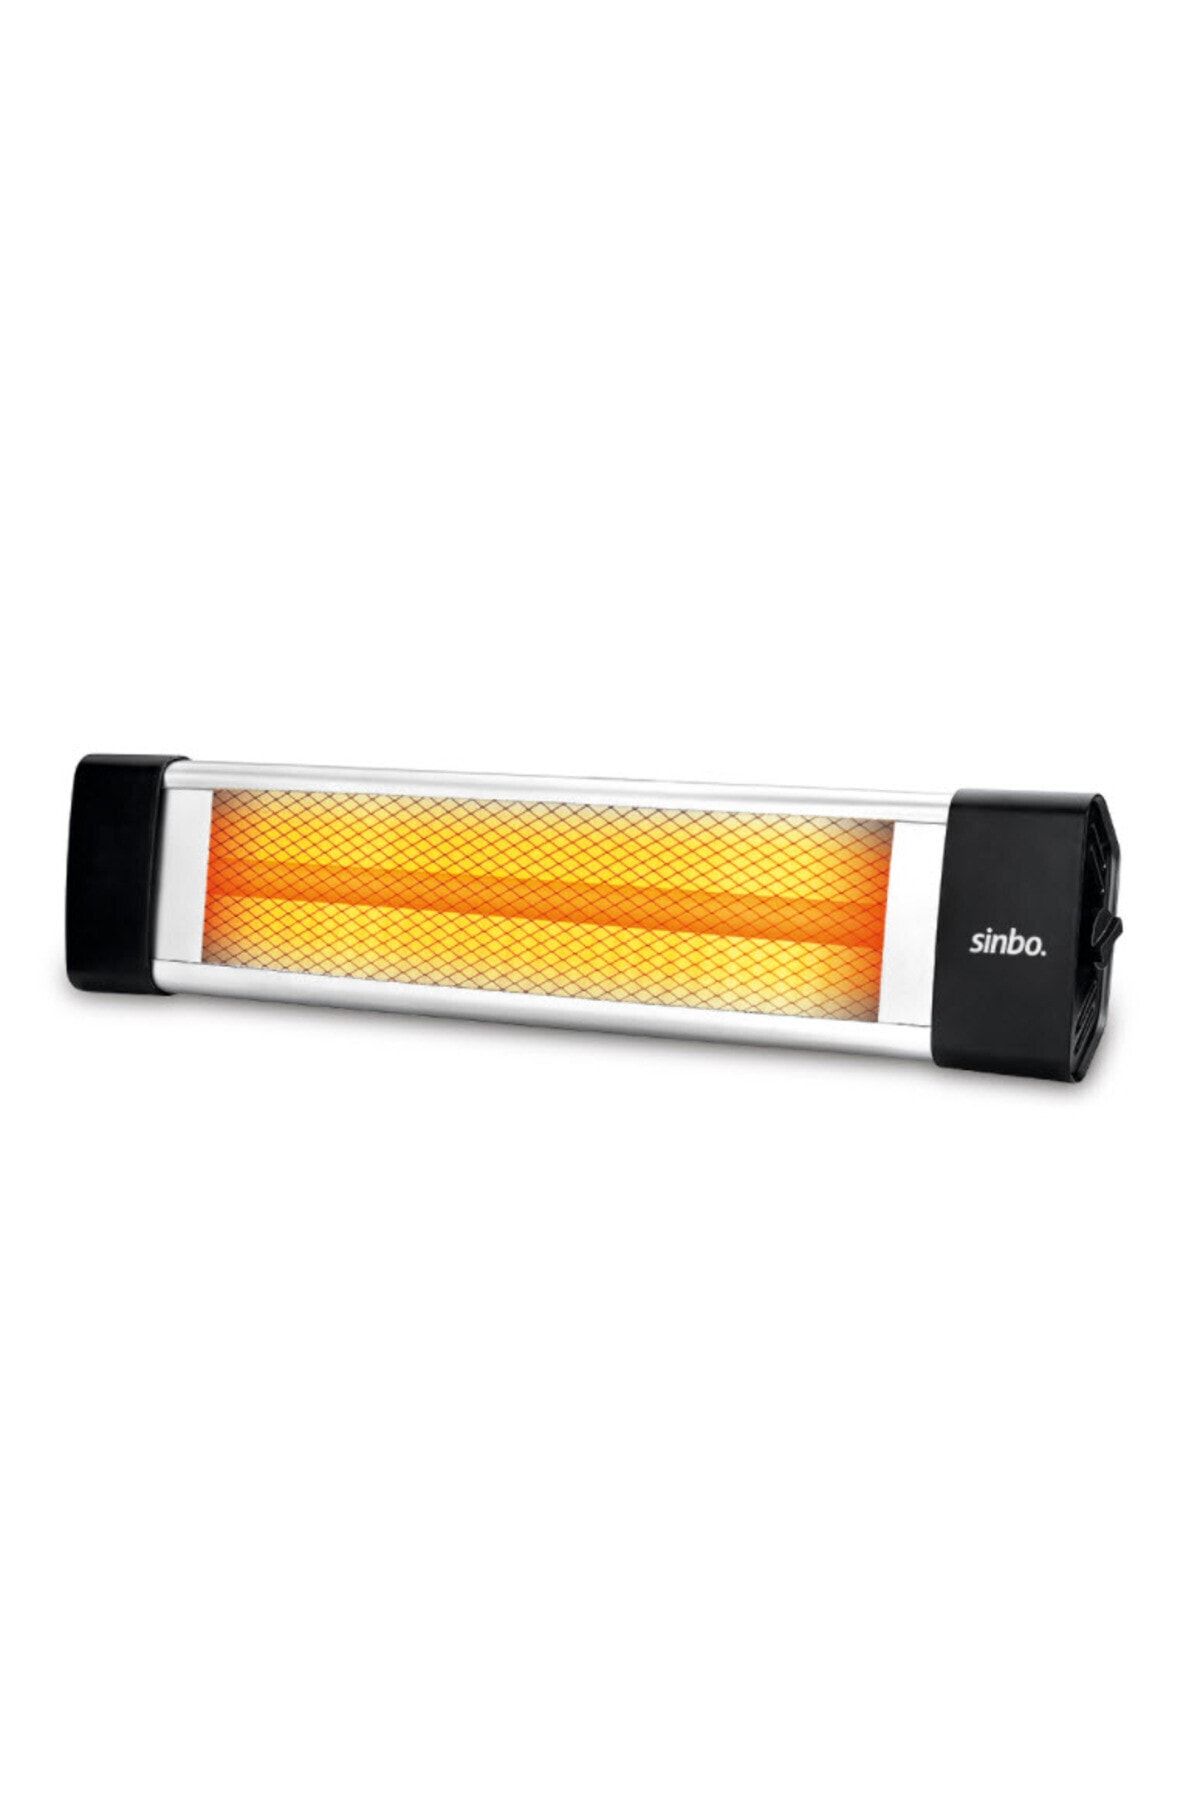 Sinbo 2500 W Infrared Isıtıcı